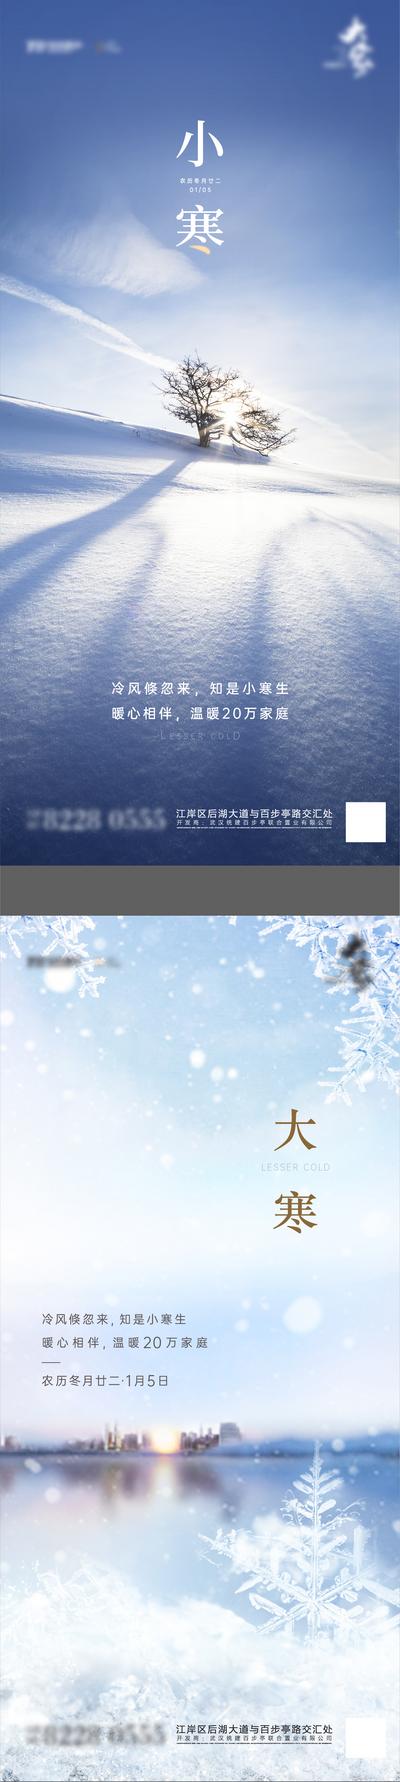 南门网 海报 二十四节气 大寒 小寒 雪花 雪景